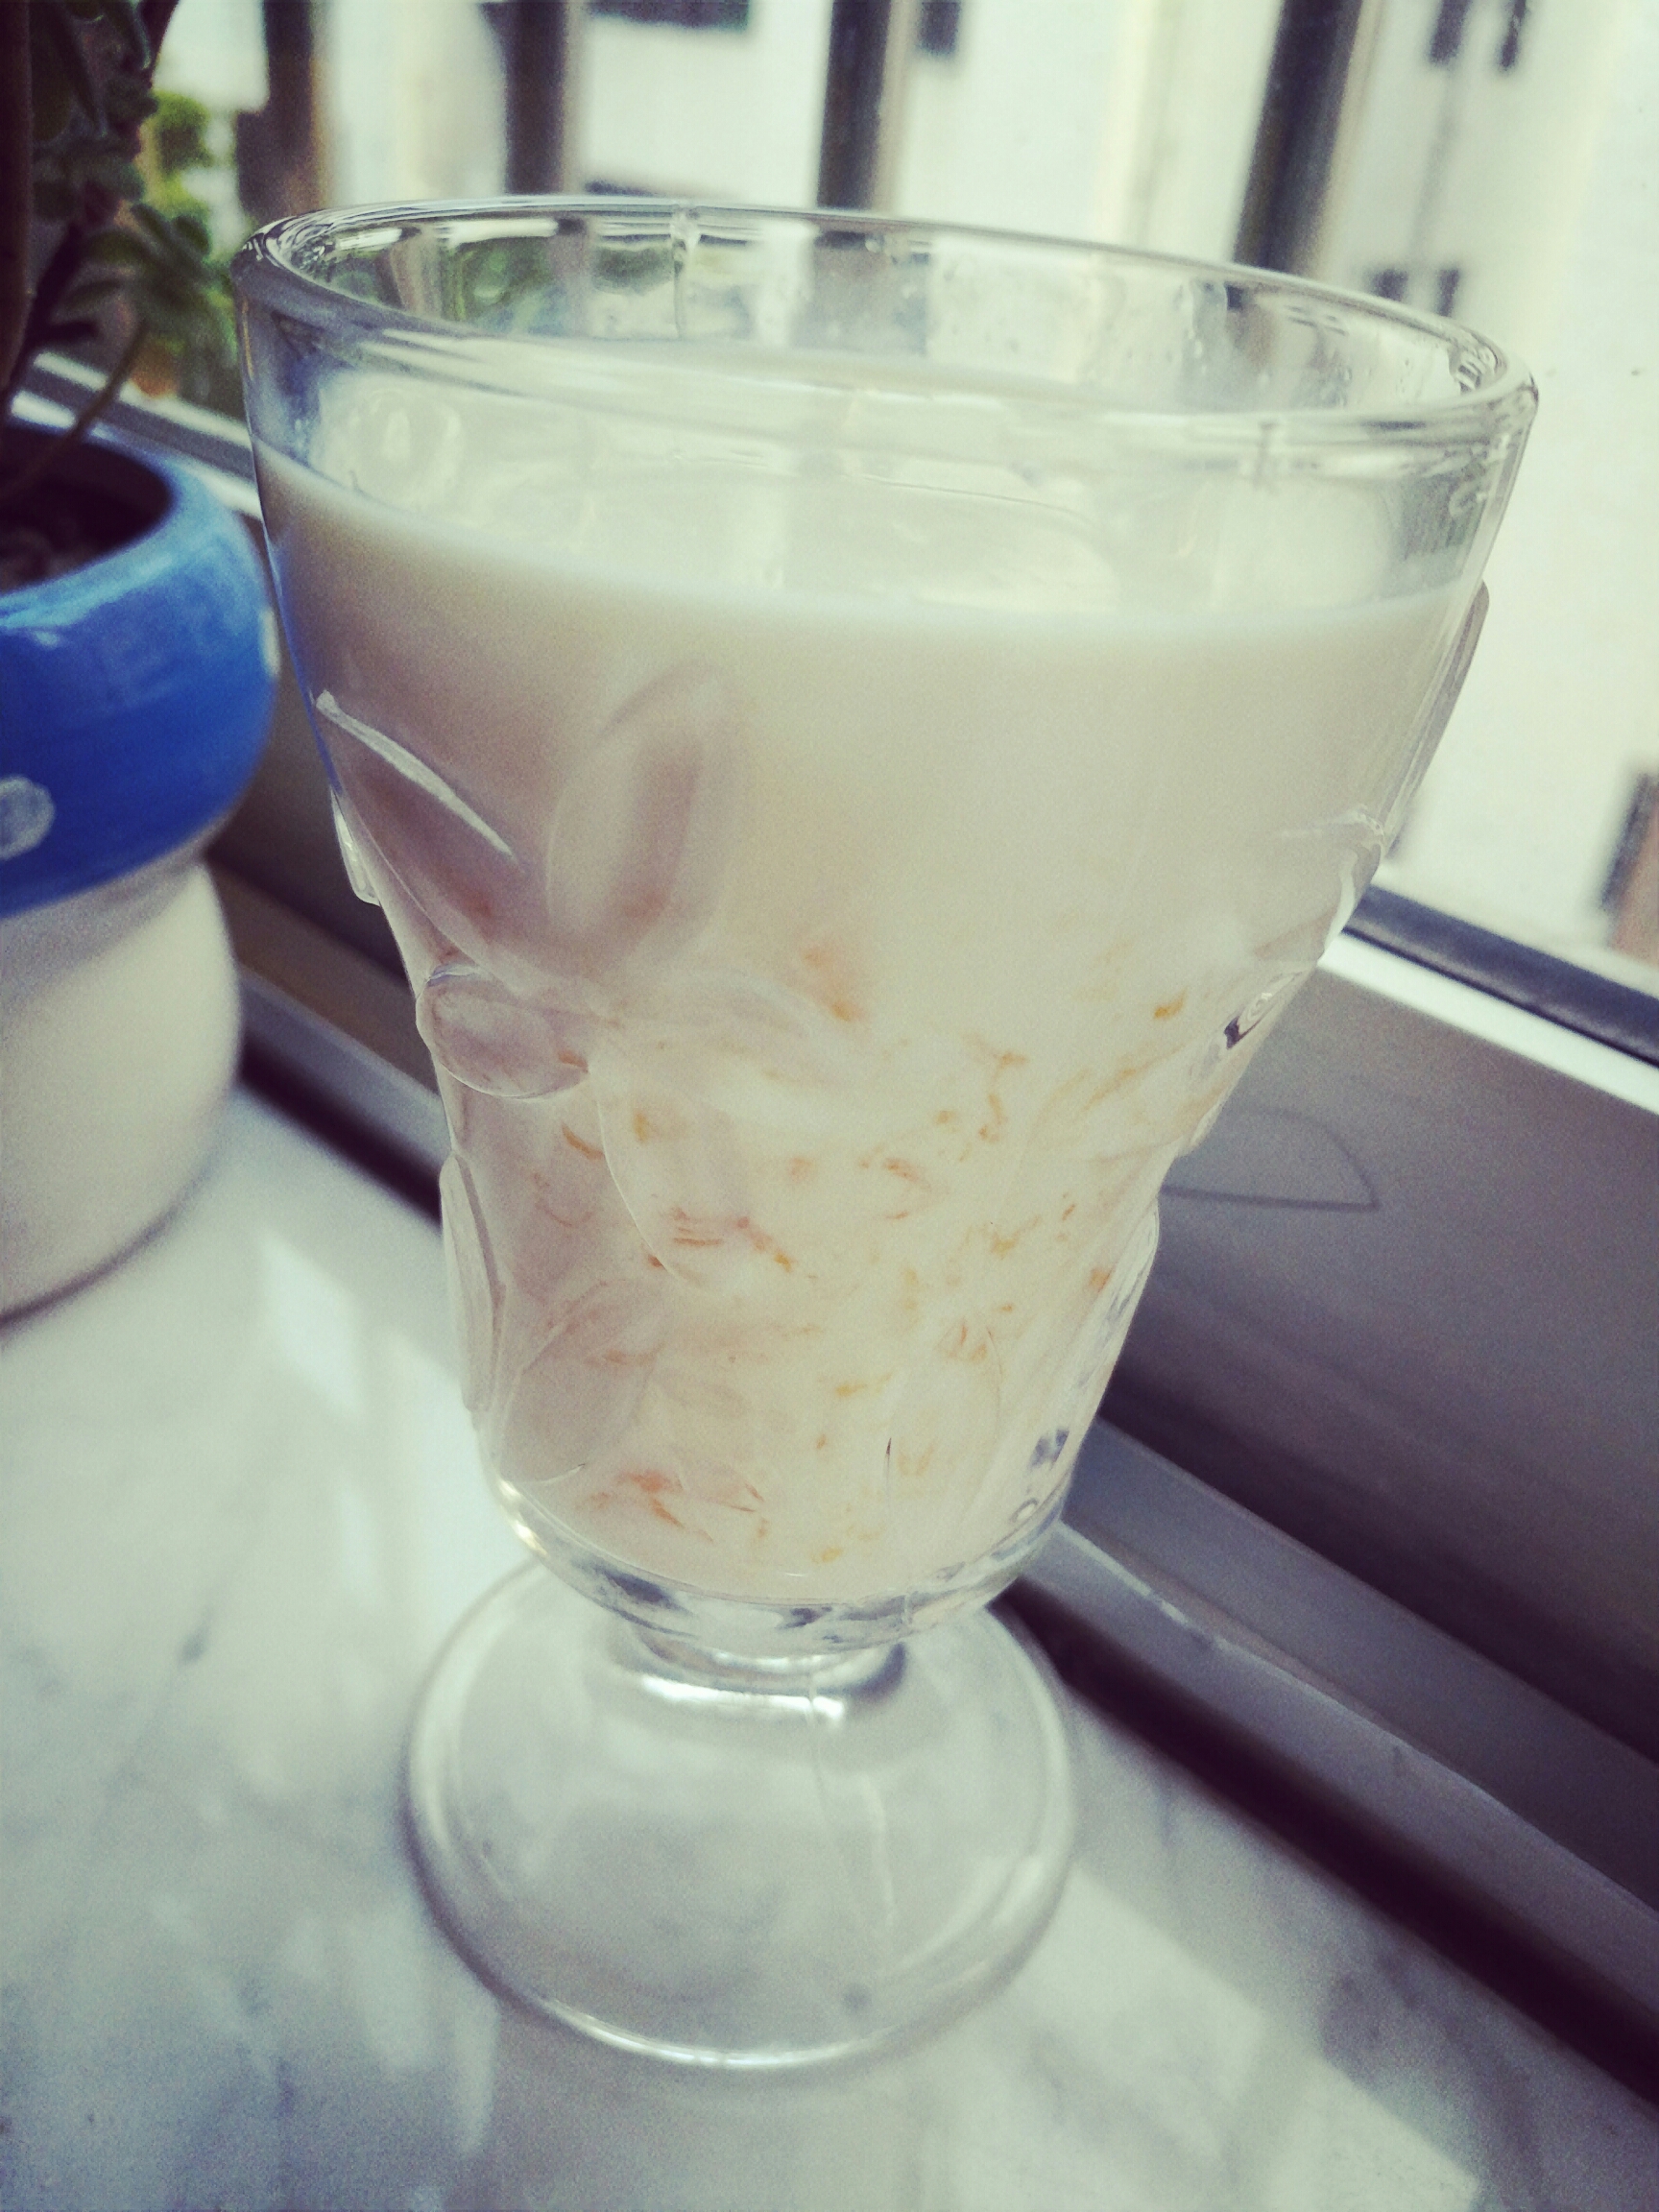 芒果酸奶榨汁图片